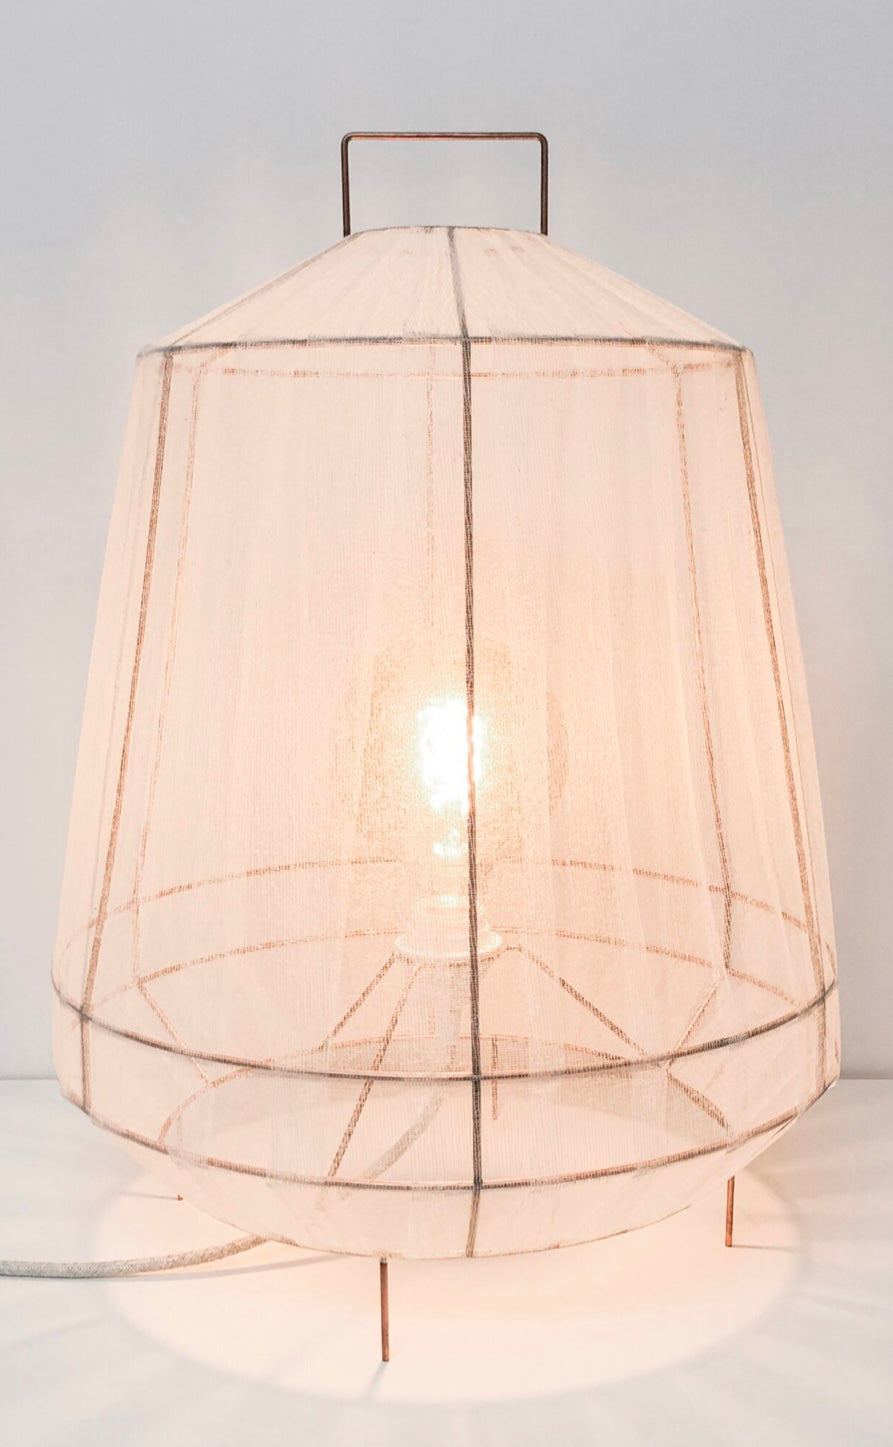 Trapeze lamp